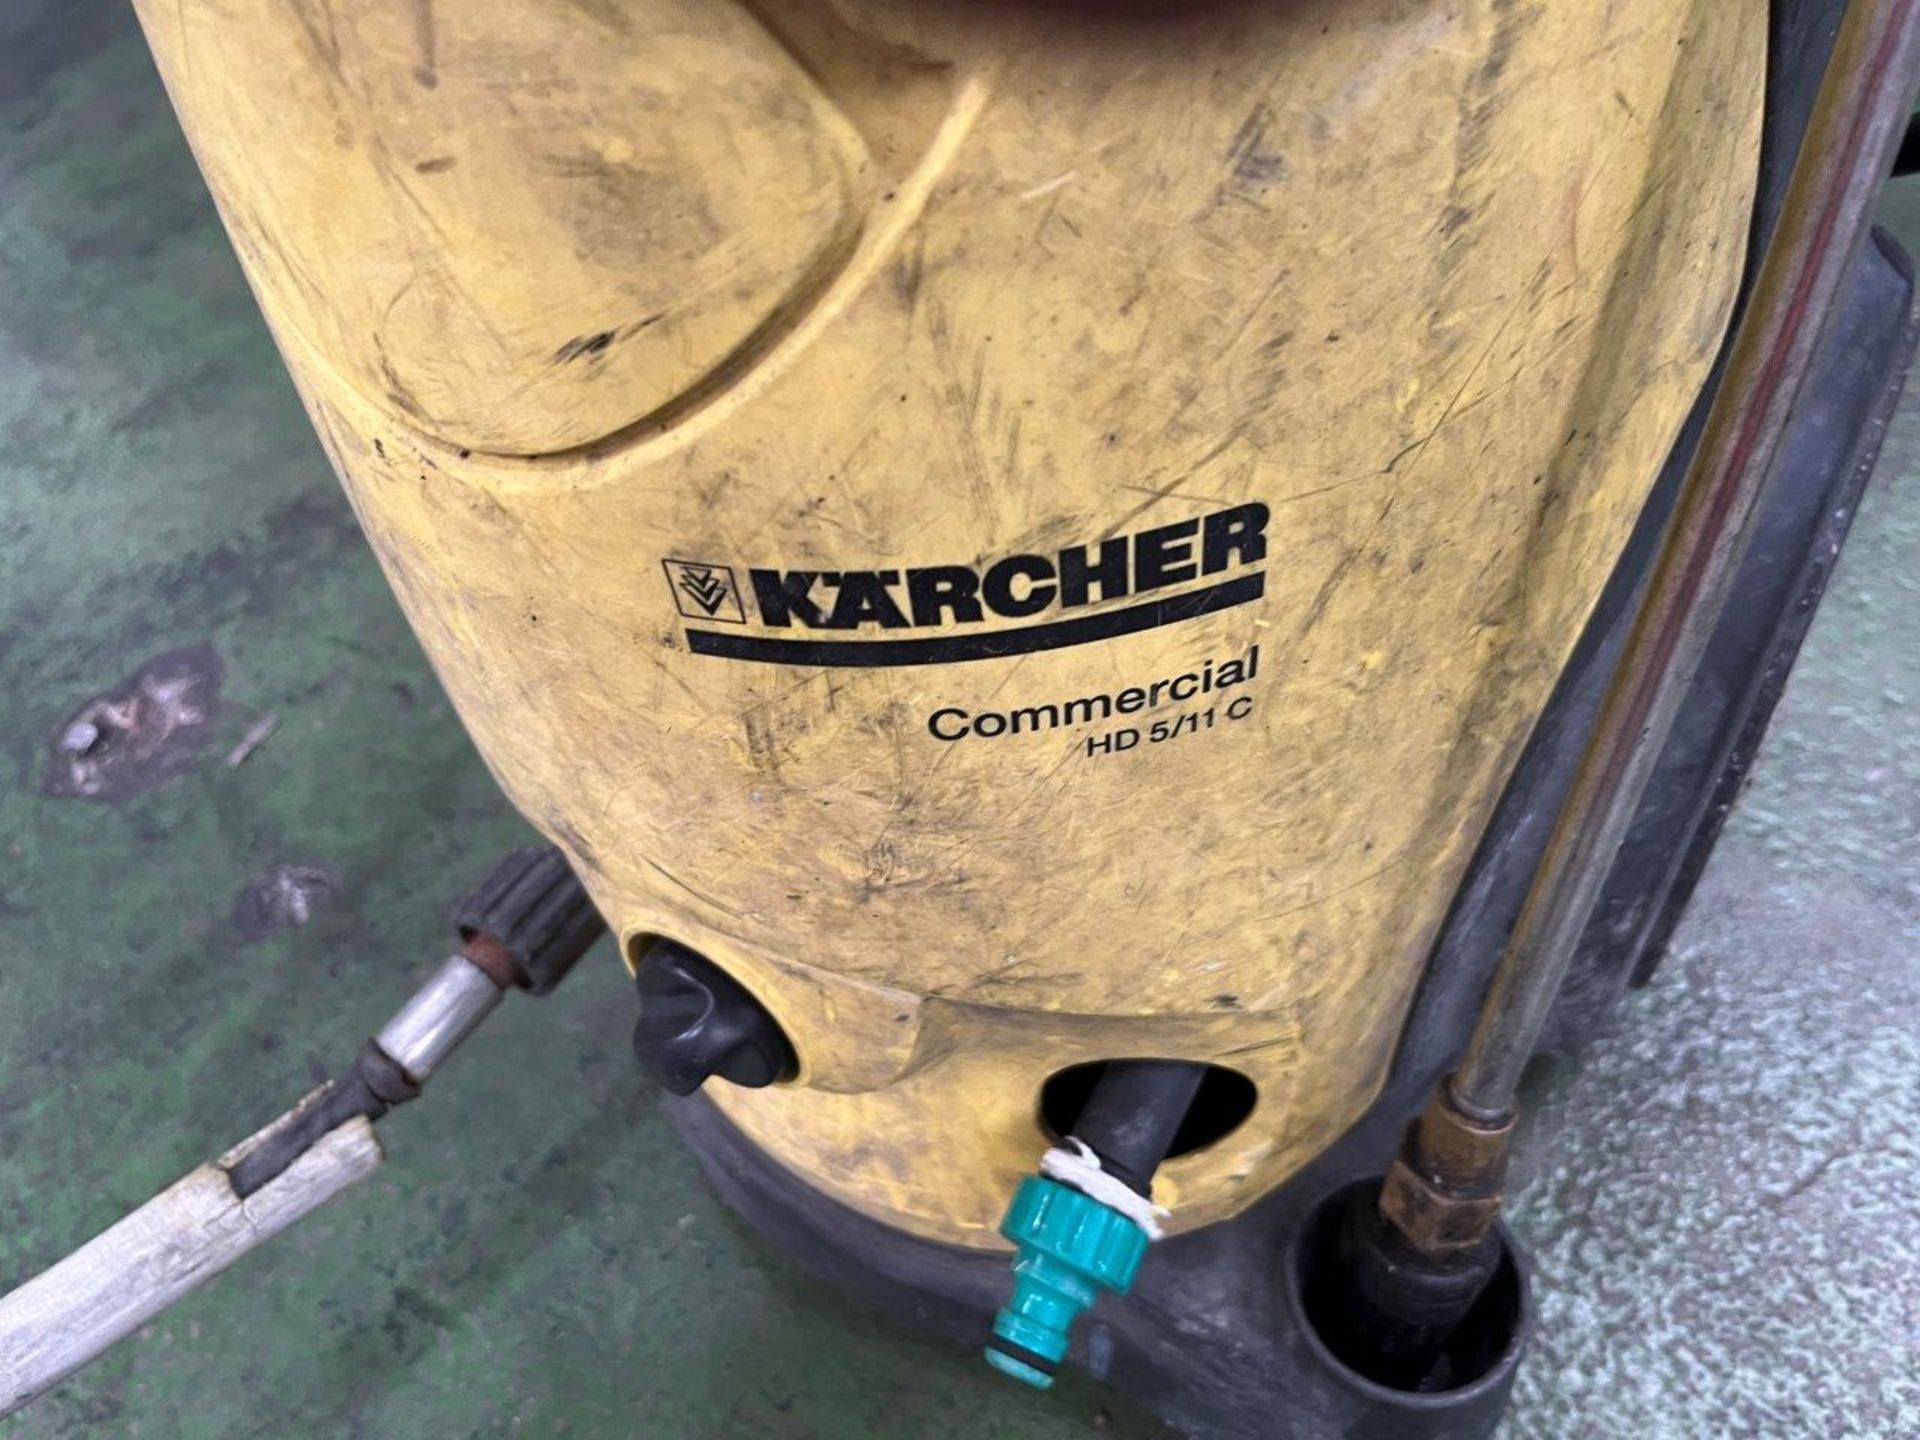 Karcher Pressure washer - Image 2 of 2